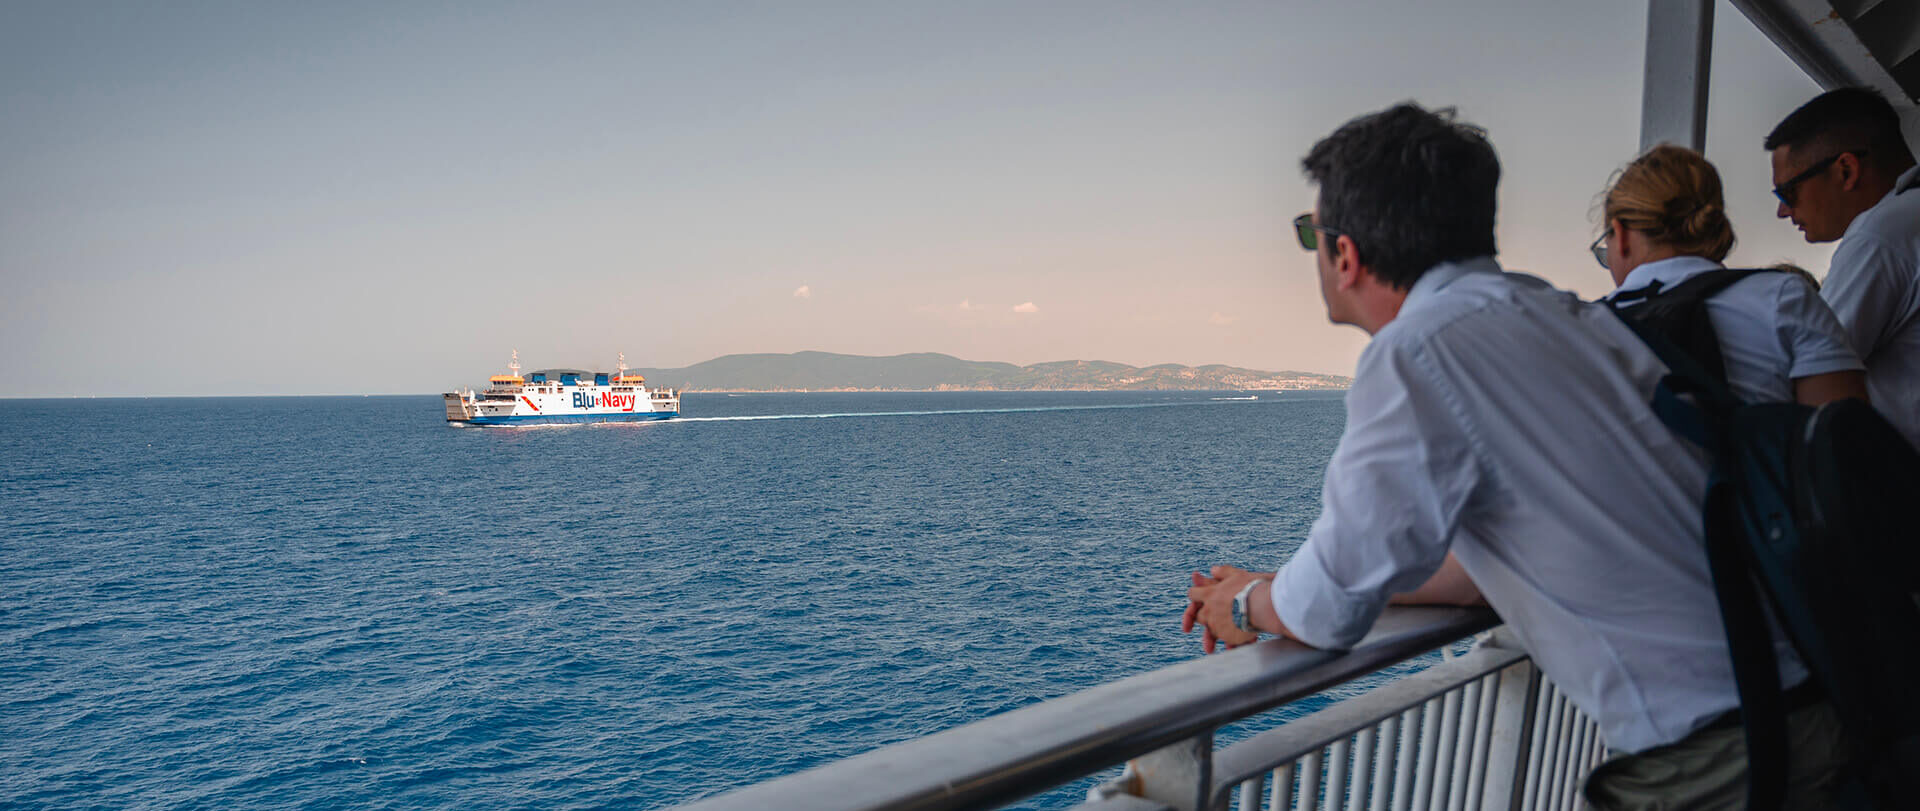 Traversata con traghetto verso l'isola d'Elba con Blu Navy traghetti